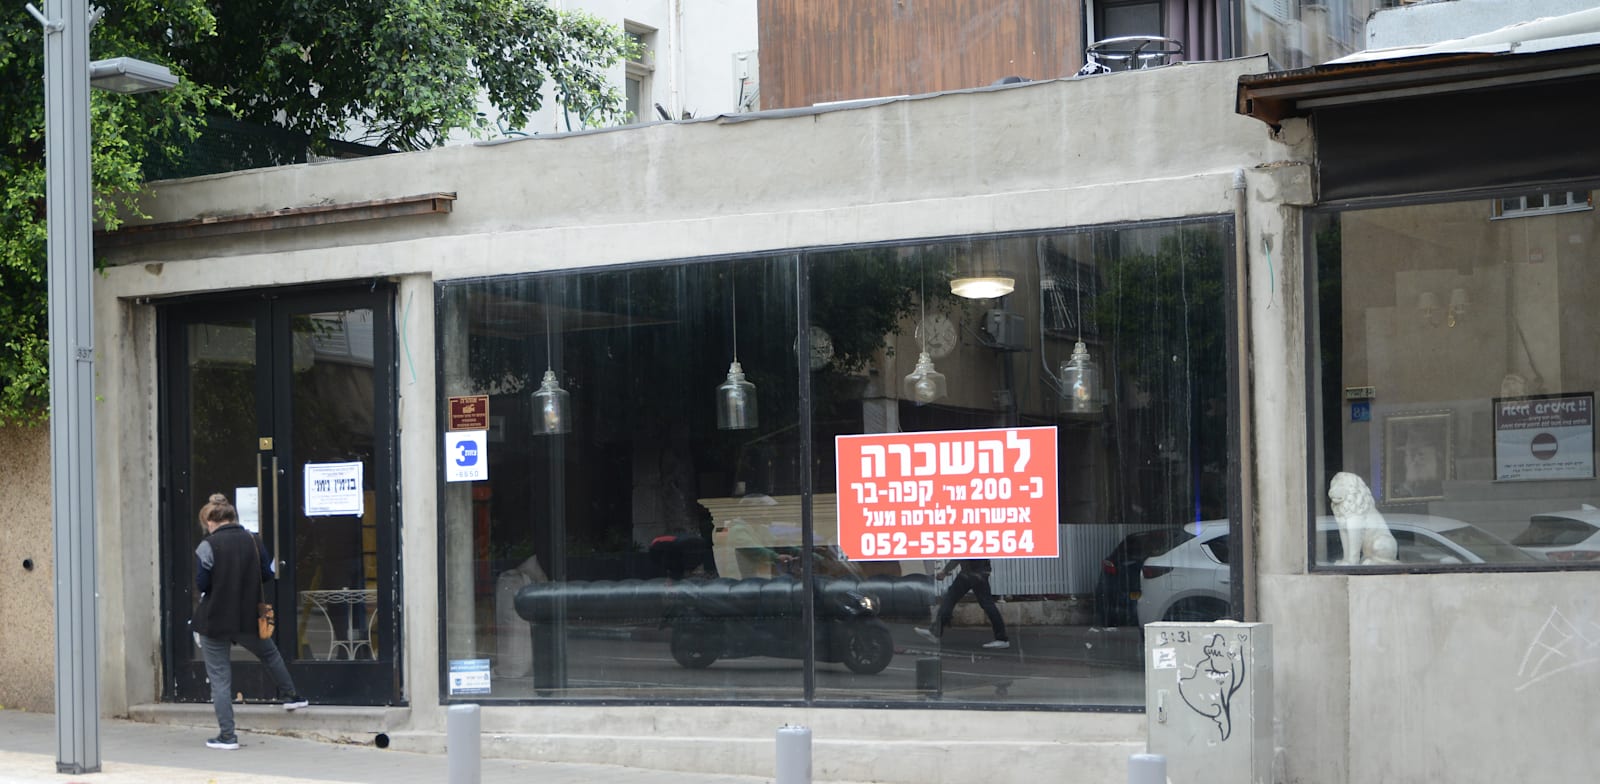 חנויות להשכרה ברחוב דיזנגוף בתל אביב / צילום: איל יצהר